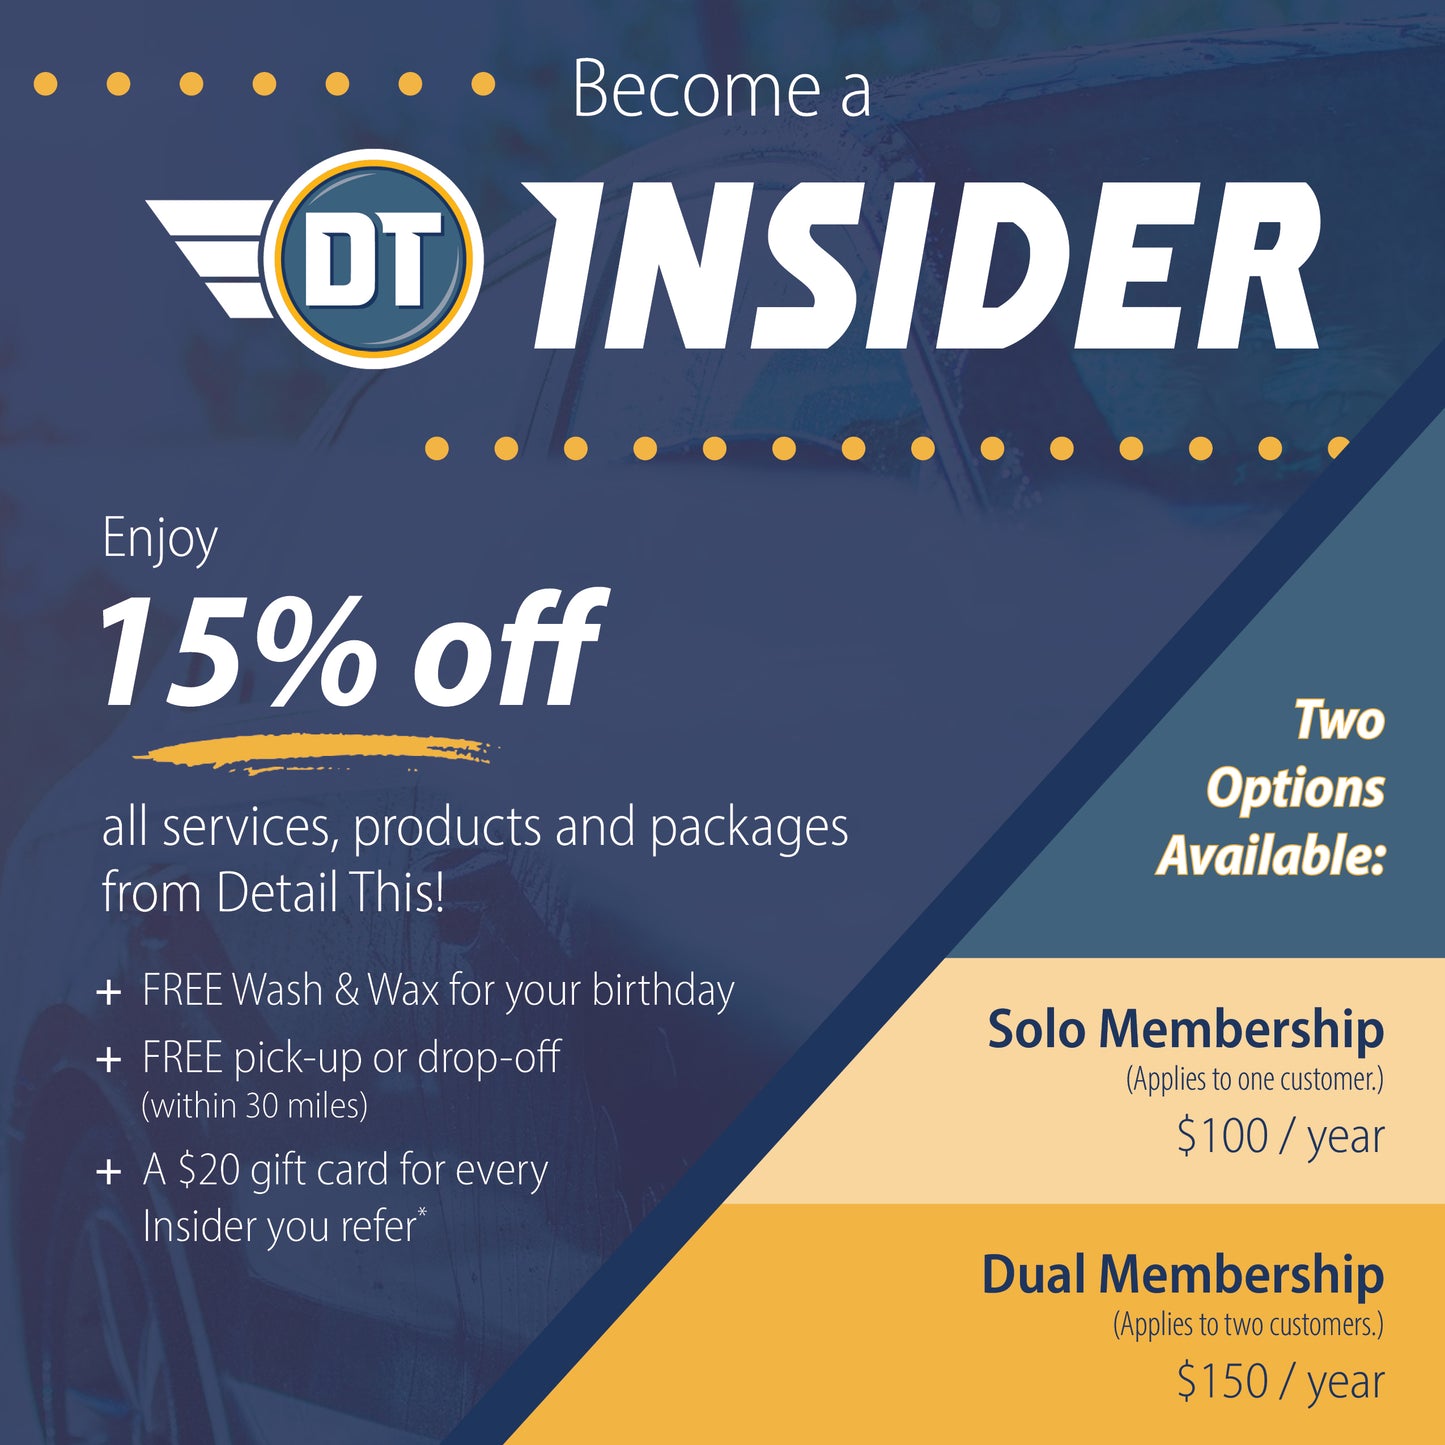 DT Insider Membership